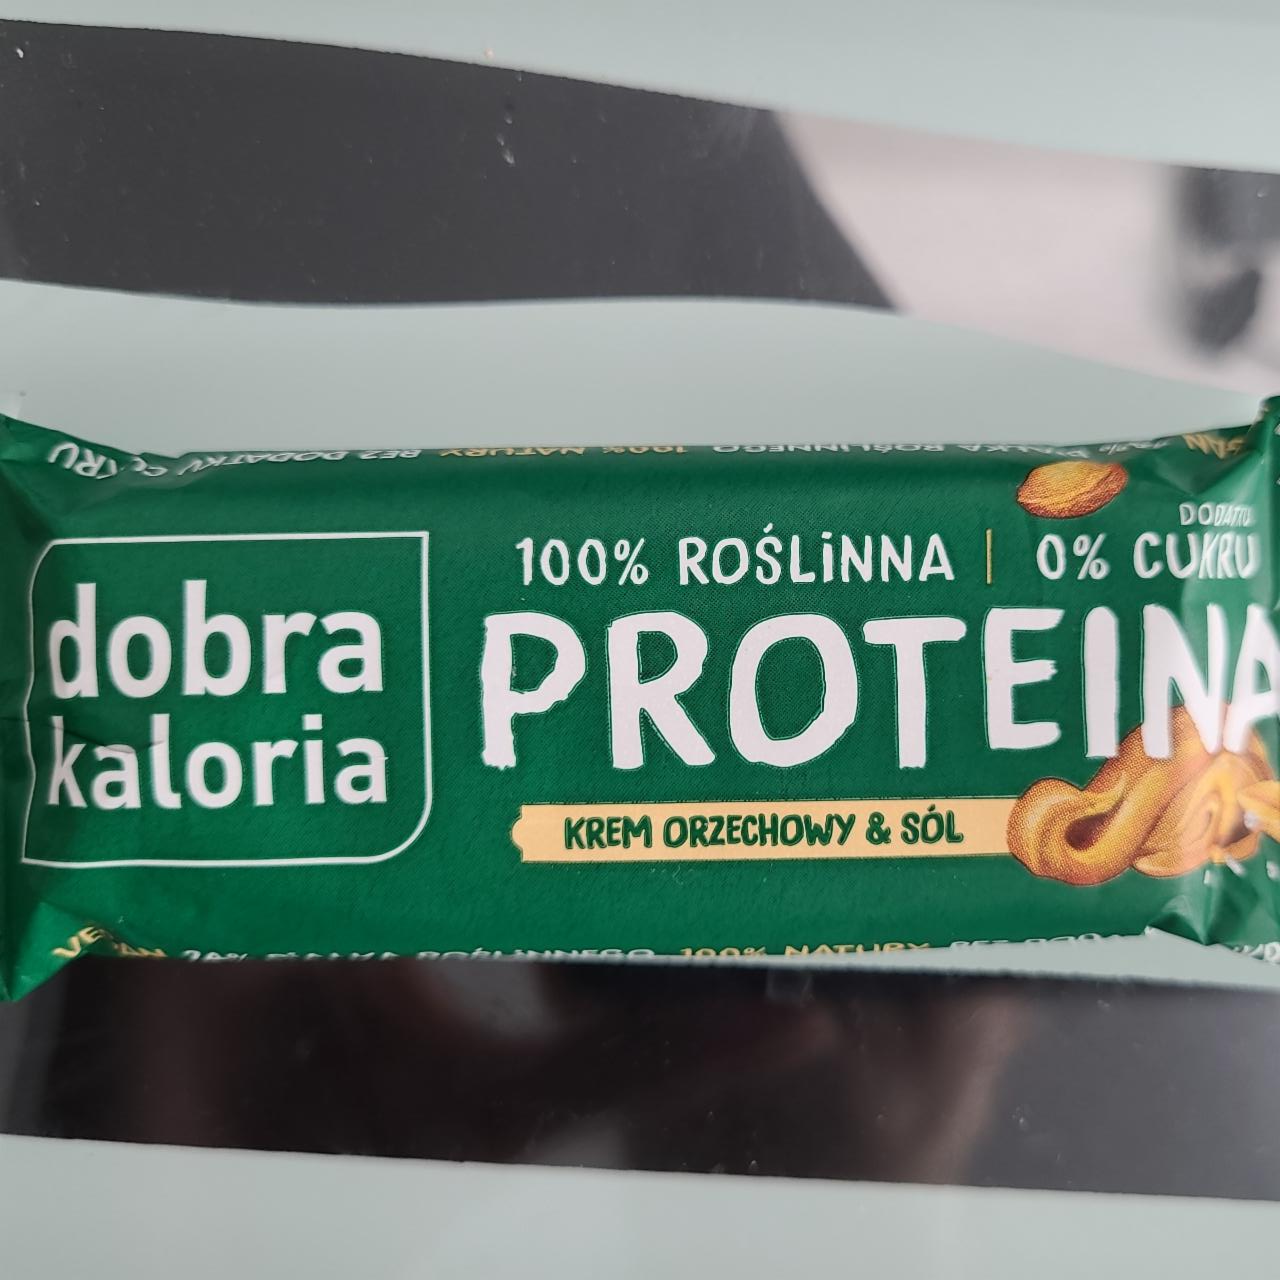 Zdjęcia - Proteina krem orzechowy & sól Dobra Kaloria